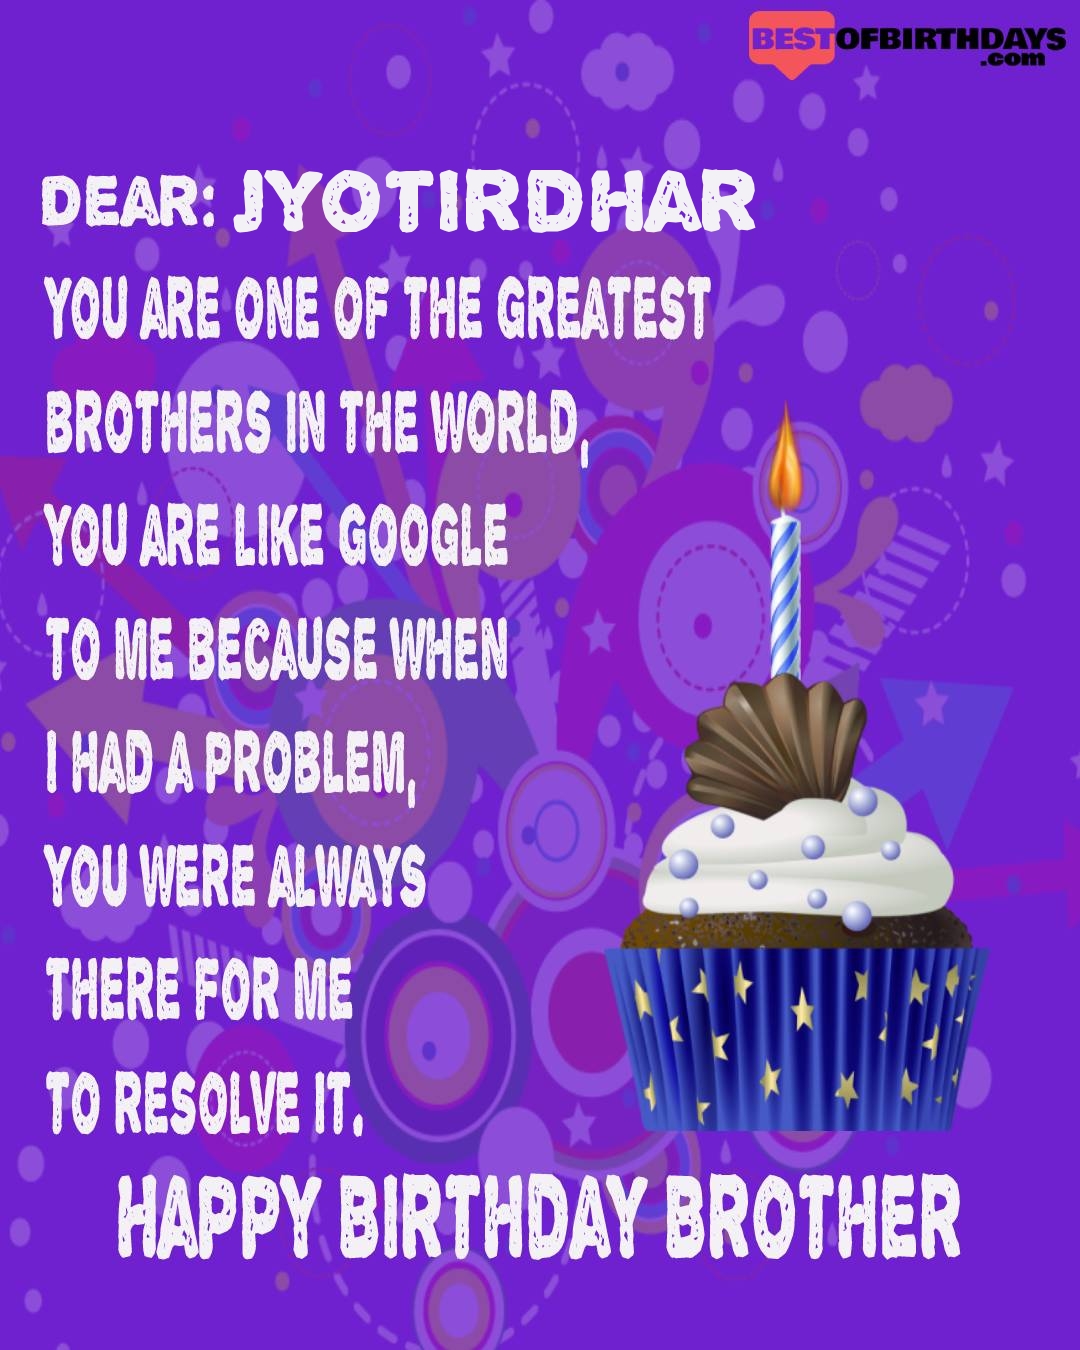 Happy birthday jyotirdhar bhai brother bro